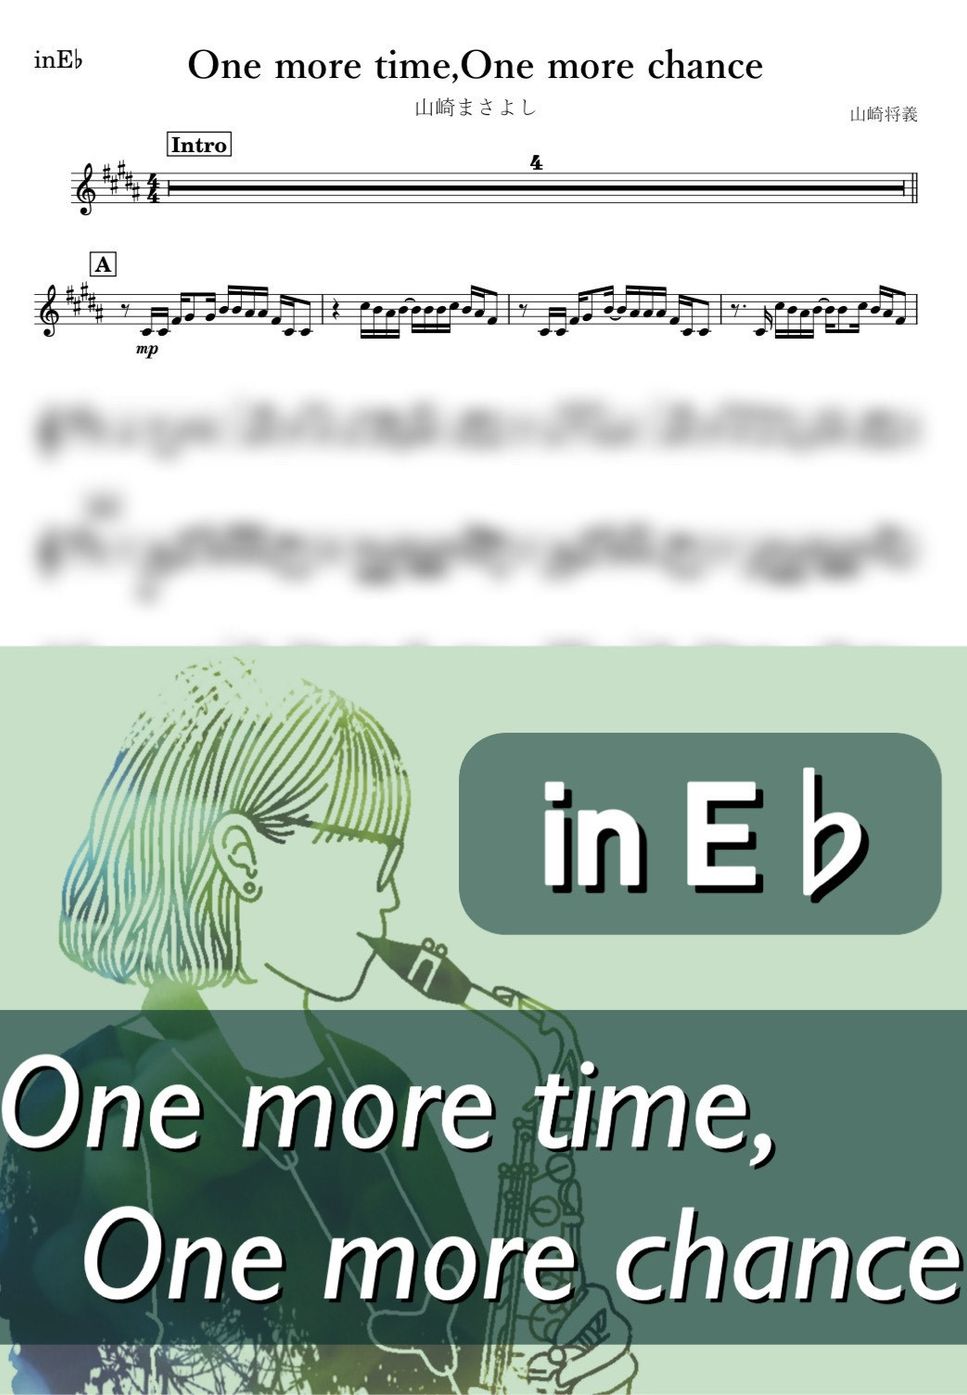 山崎まさよし - One more time,One more chance (E♭) by kanamusic